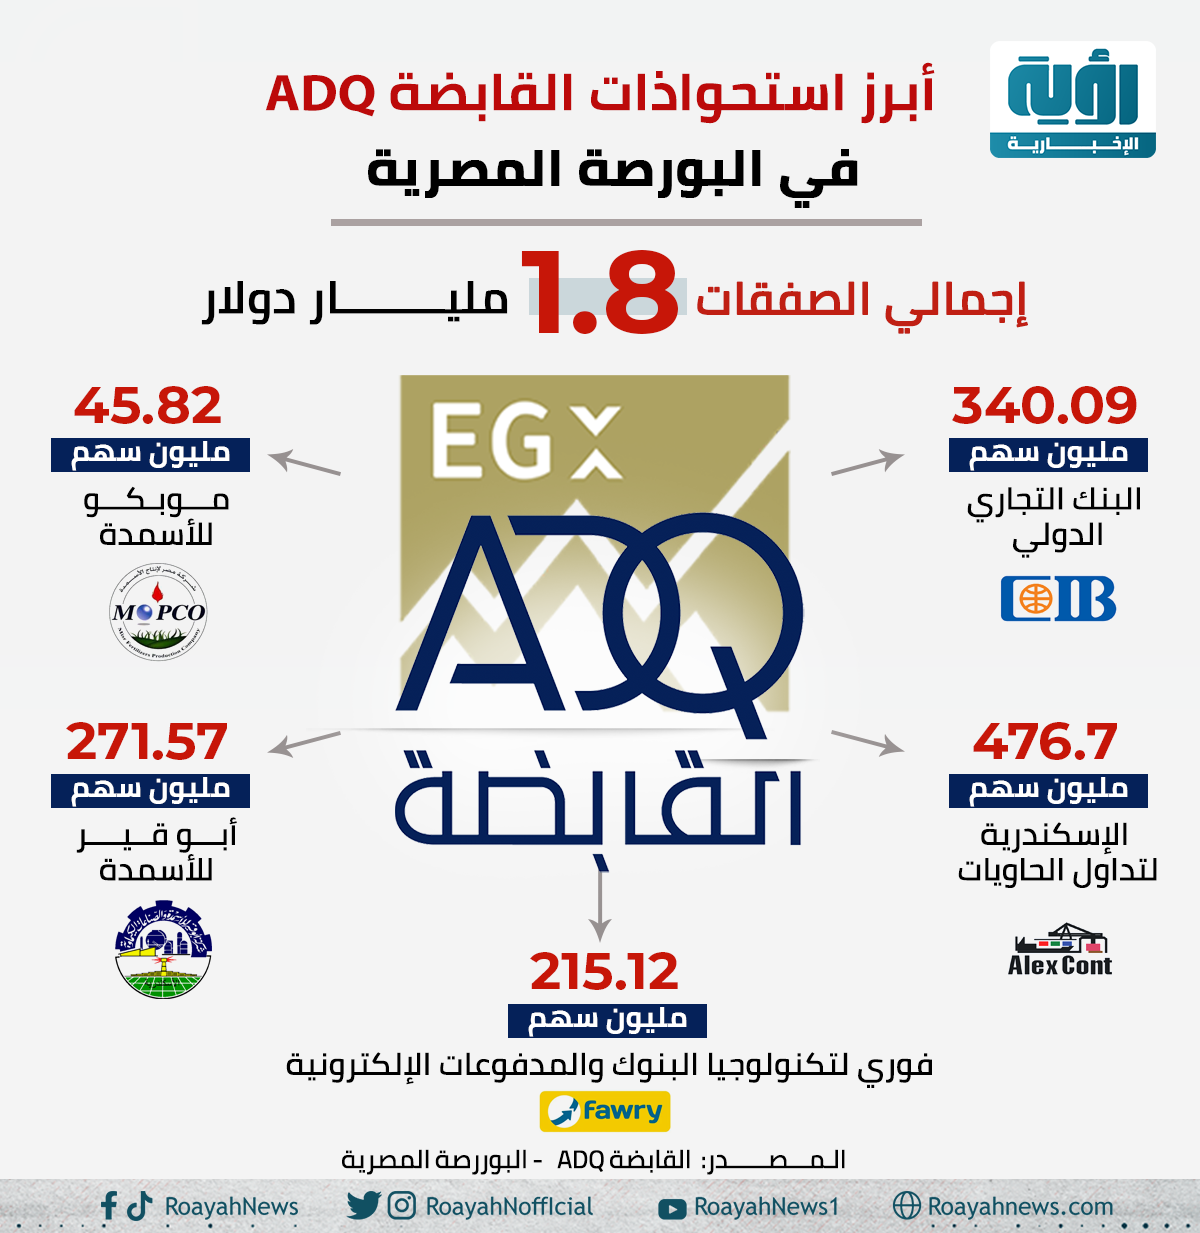 أبرز استحواذات القابضةADQ في البورصة المصرية